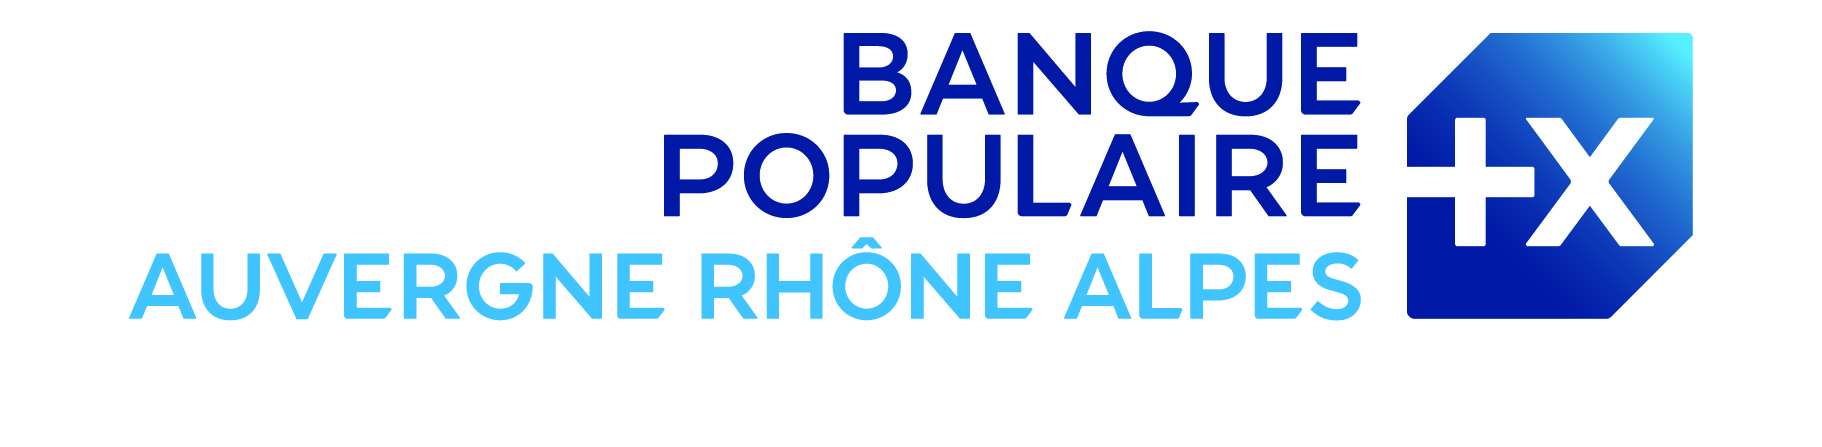 Banque Populaire Rhône Alpes